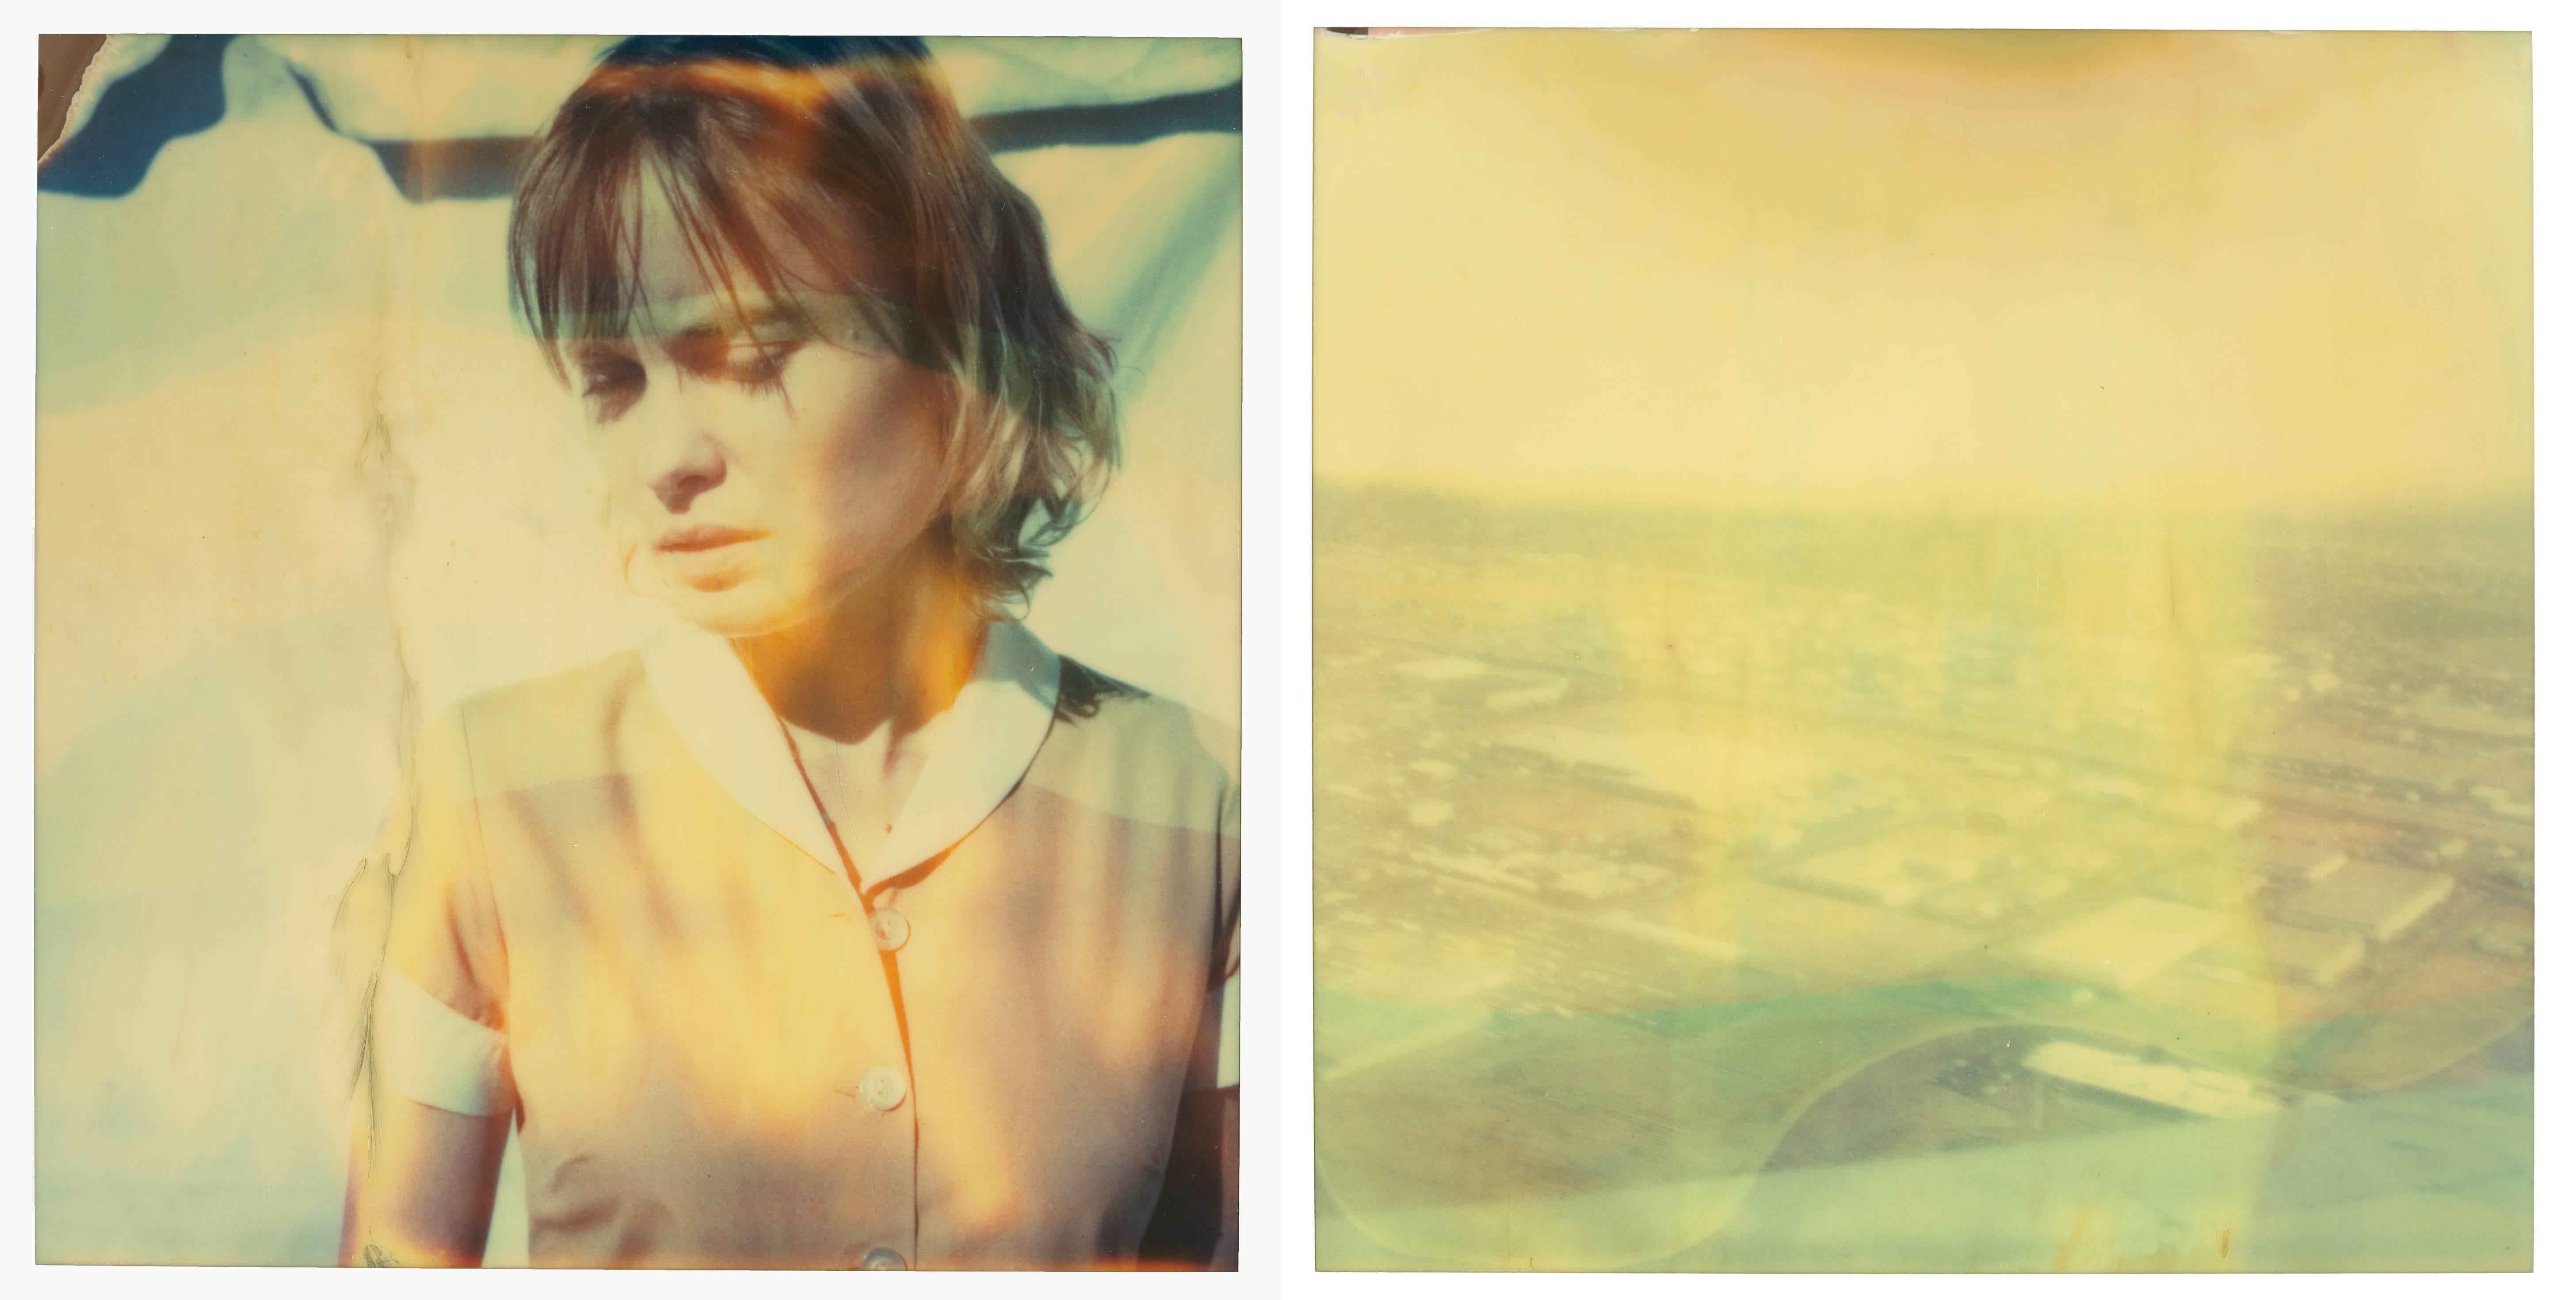 Stefanie Schneider Portrait Photograph – The Farmer's Wife's Dream – Diptychon, analog, basiert auf zwei Polaroids